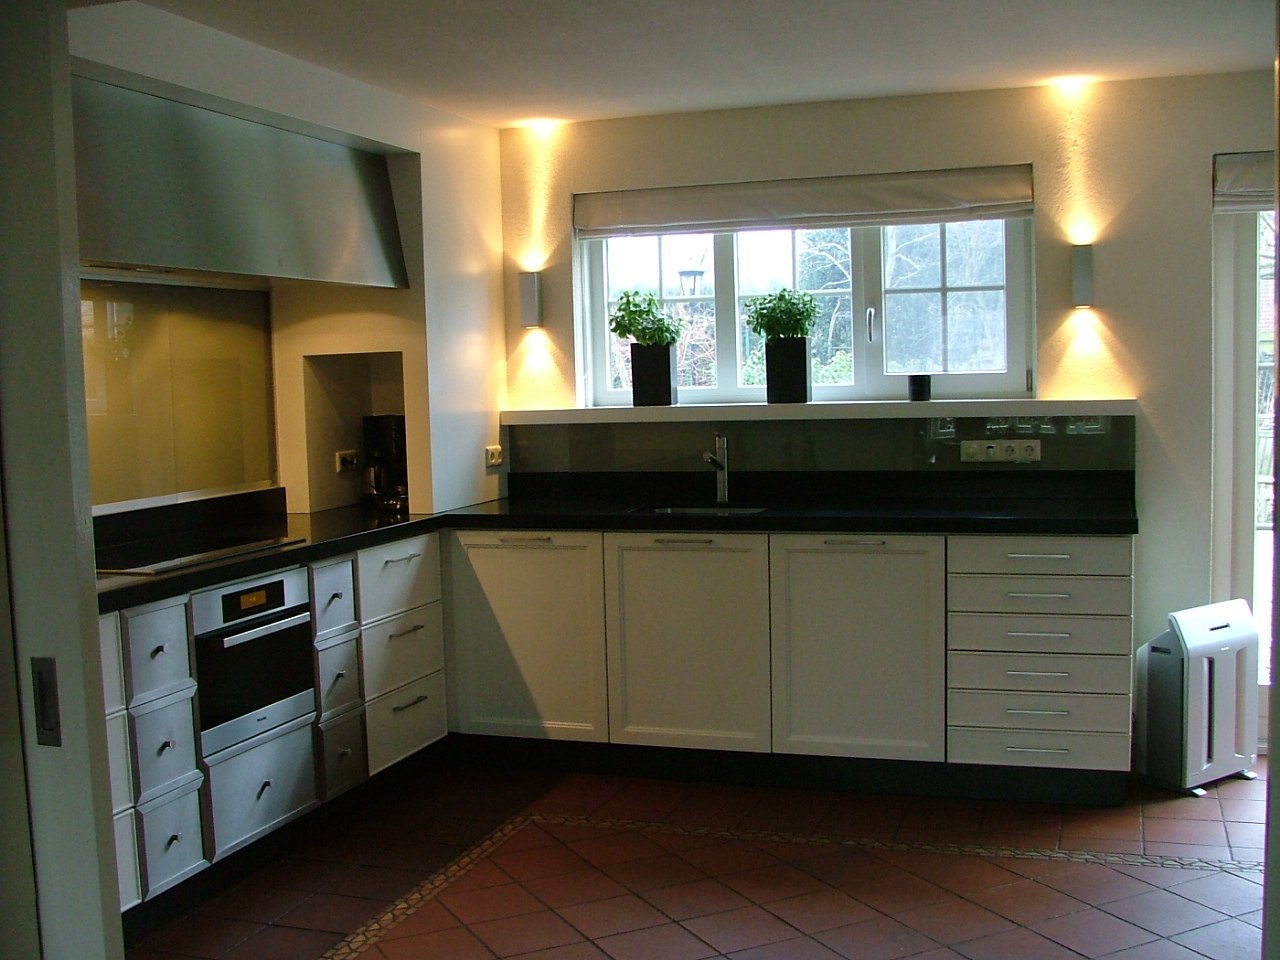 Keuken op maat met modern design.